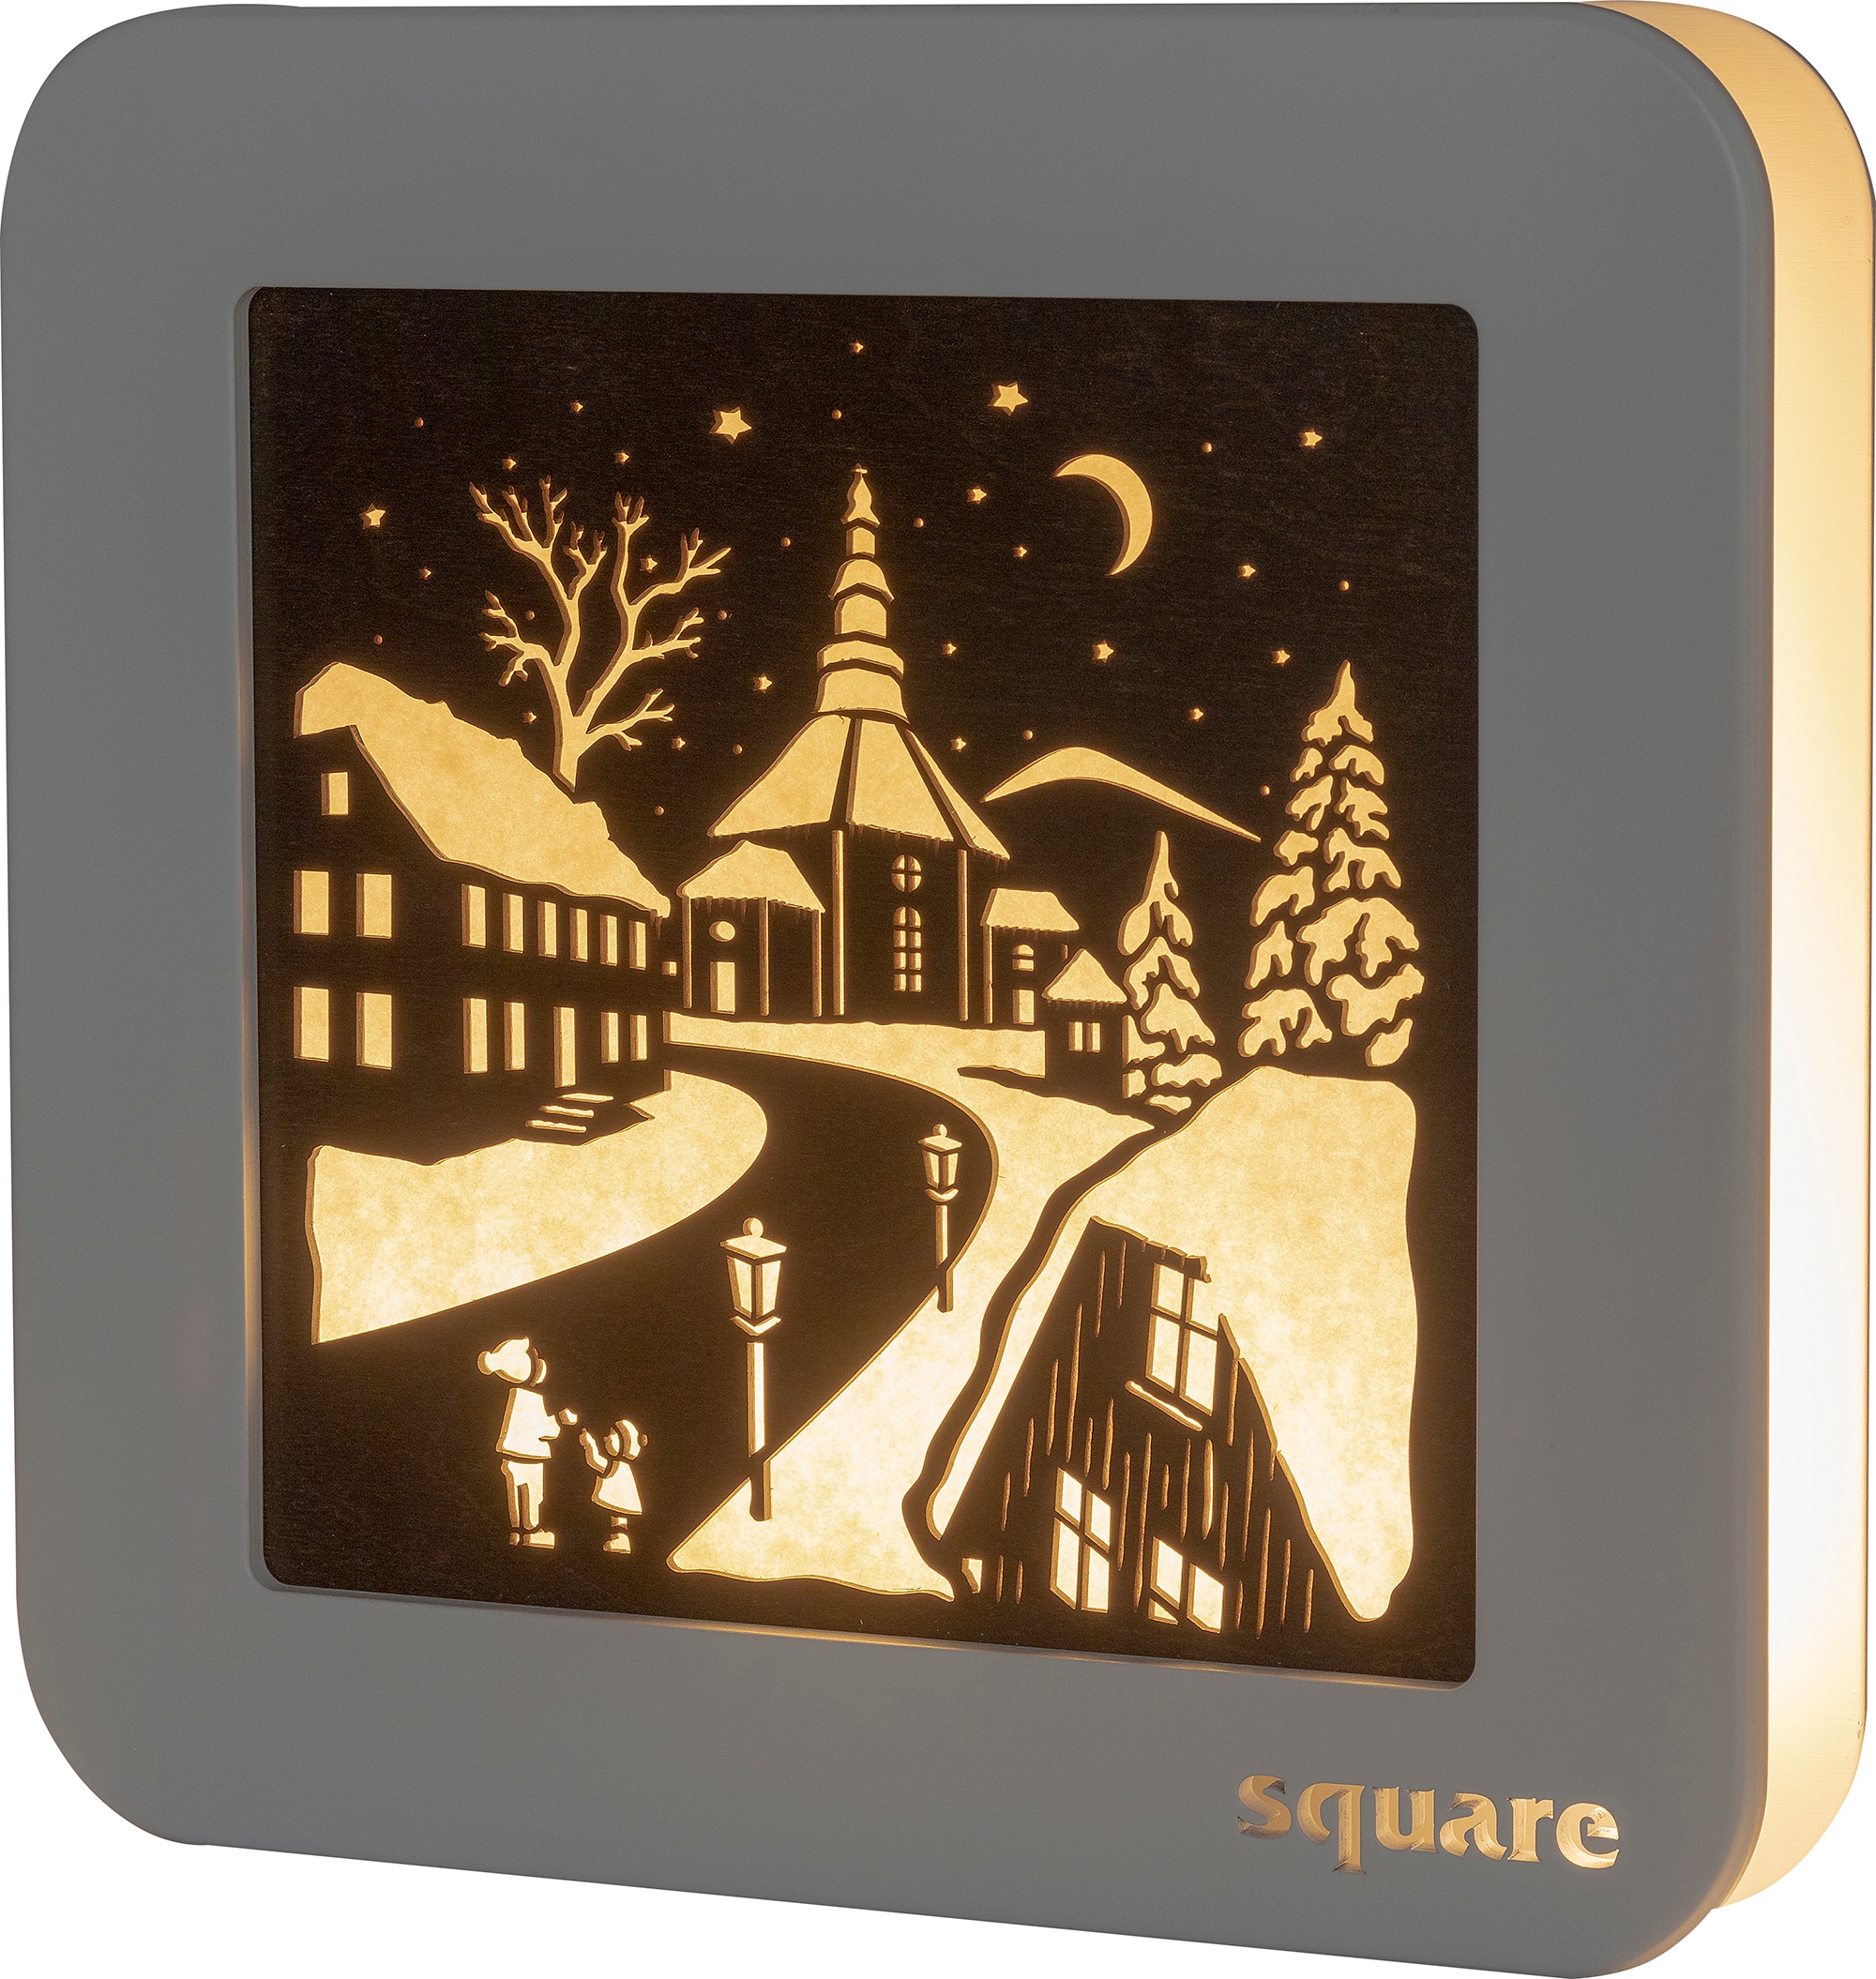 LED-Bild »Square - Standbild Seiffen, Weihnachtsdeko«, (1 St.), mit Timer